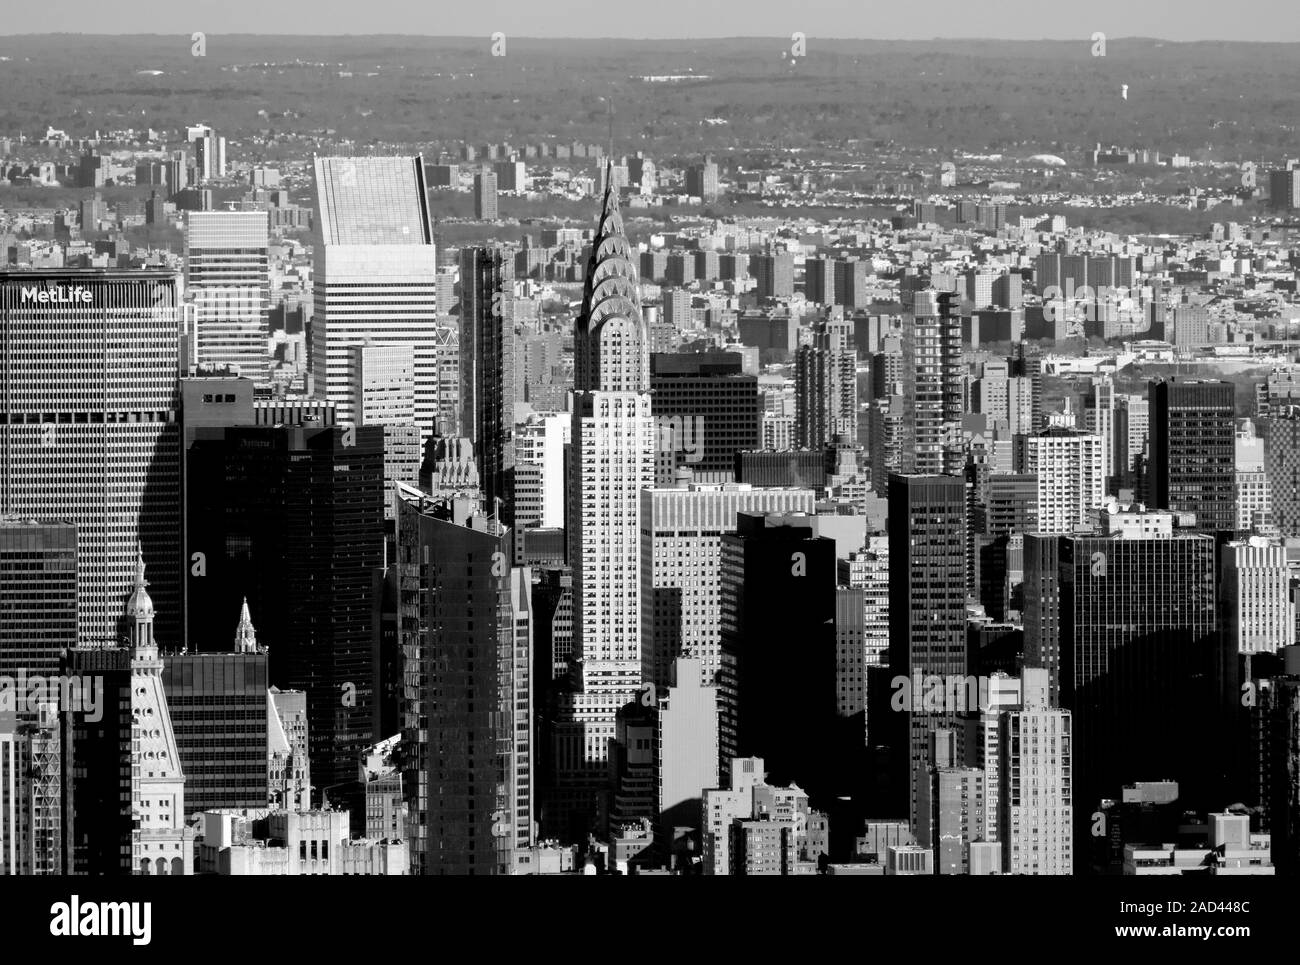 La splendida skyline di Midtown Manhattan Island tra cui l'Empire State Building e il Chrysler Building di New York City, Stati Uniti d'America Foto Stock